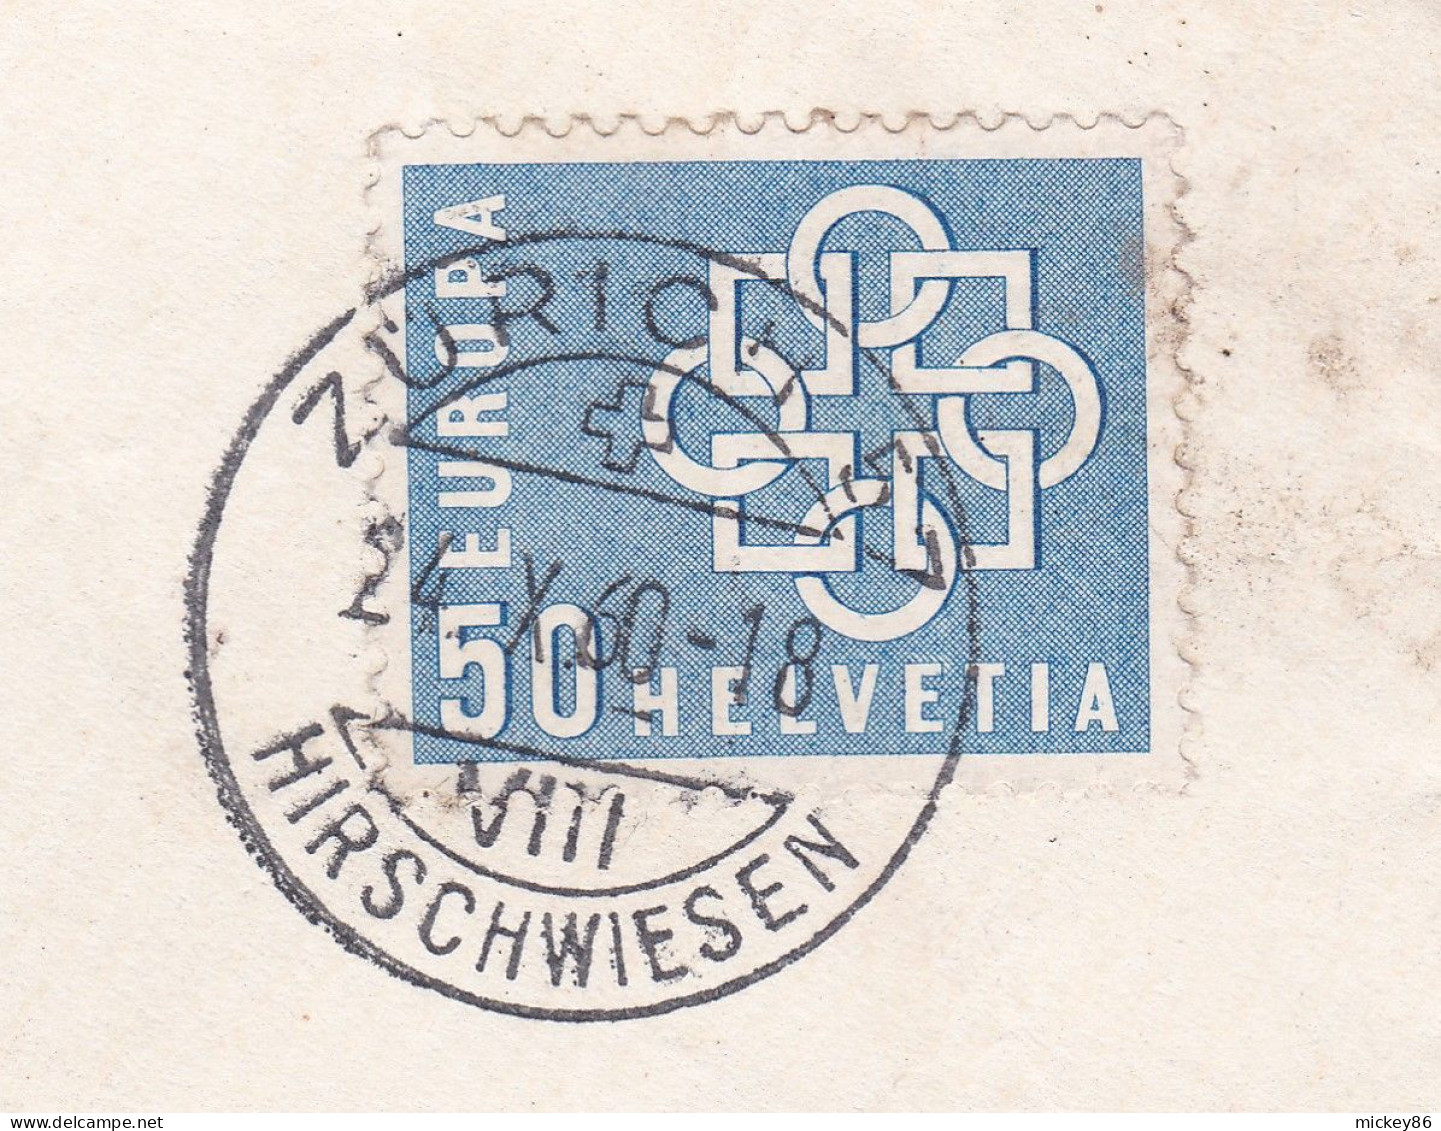 Suisse -1960-- Lettre ZURICH  Pour POITIERS-86 (France)....timbre EUROPA  Seul  Sur Lettre....... - Storia Postale